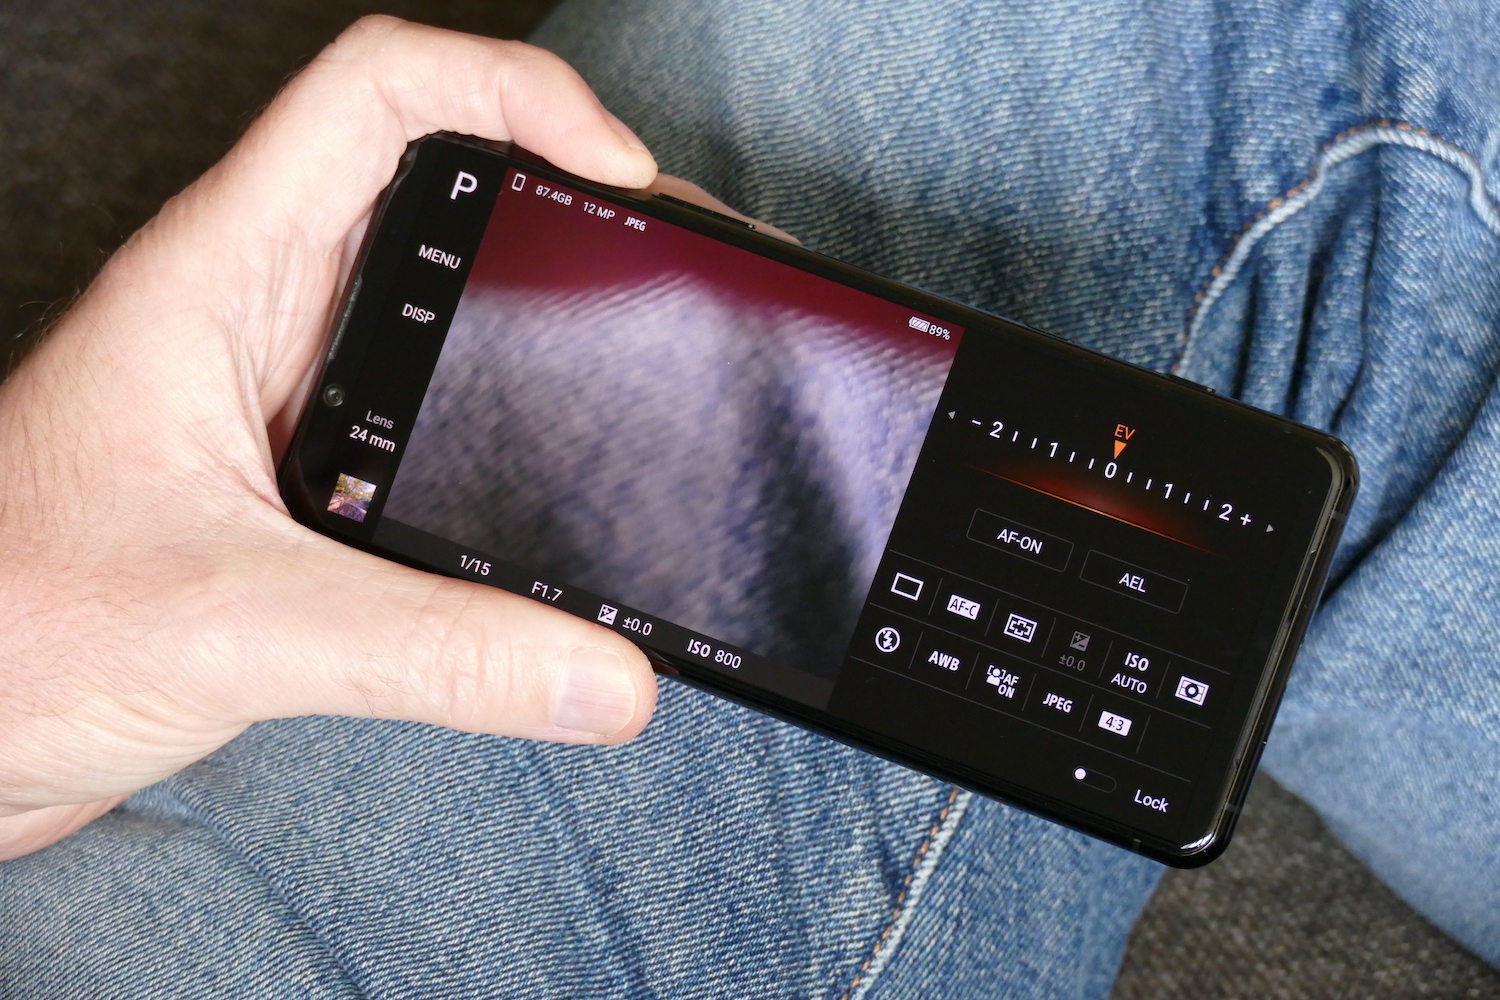 Sony Xperia Camera Pro app.